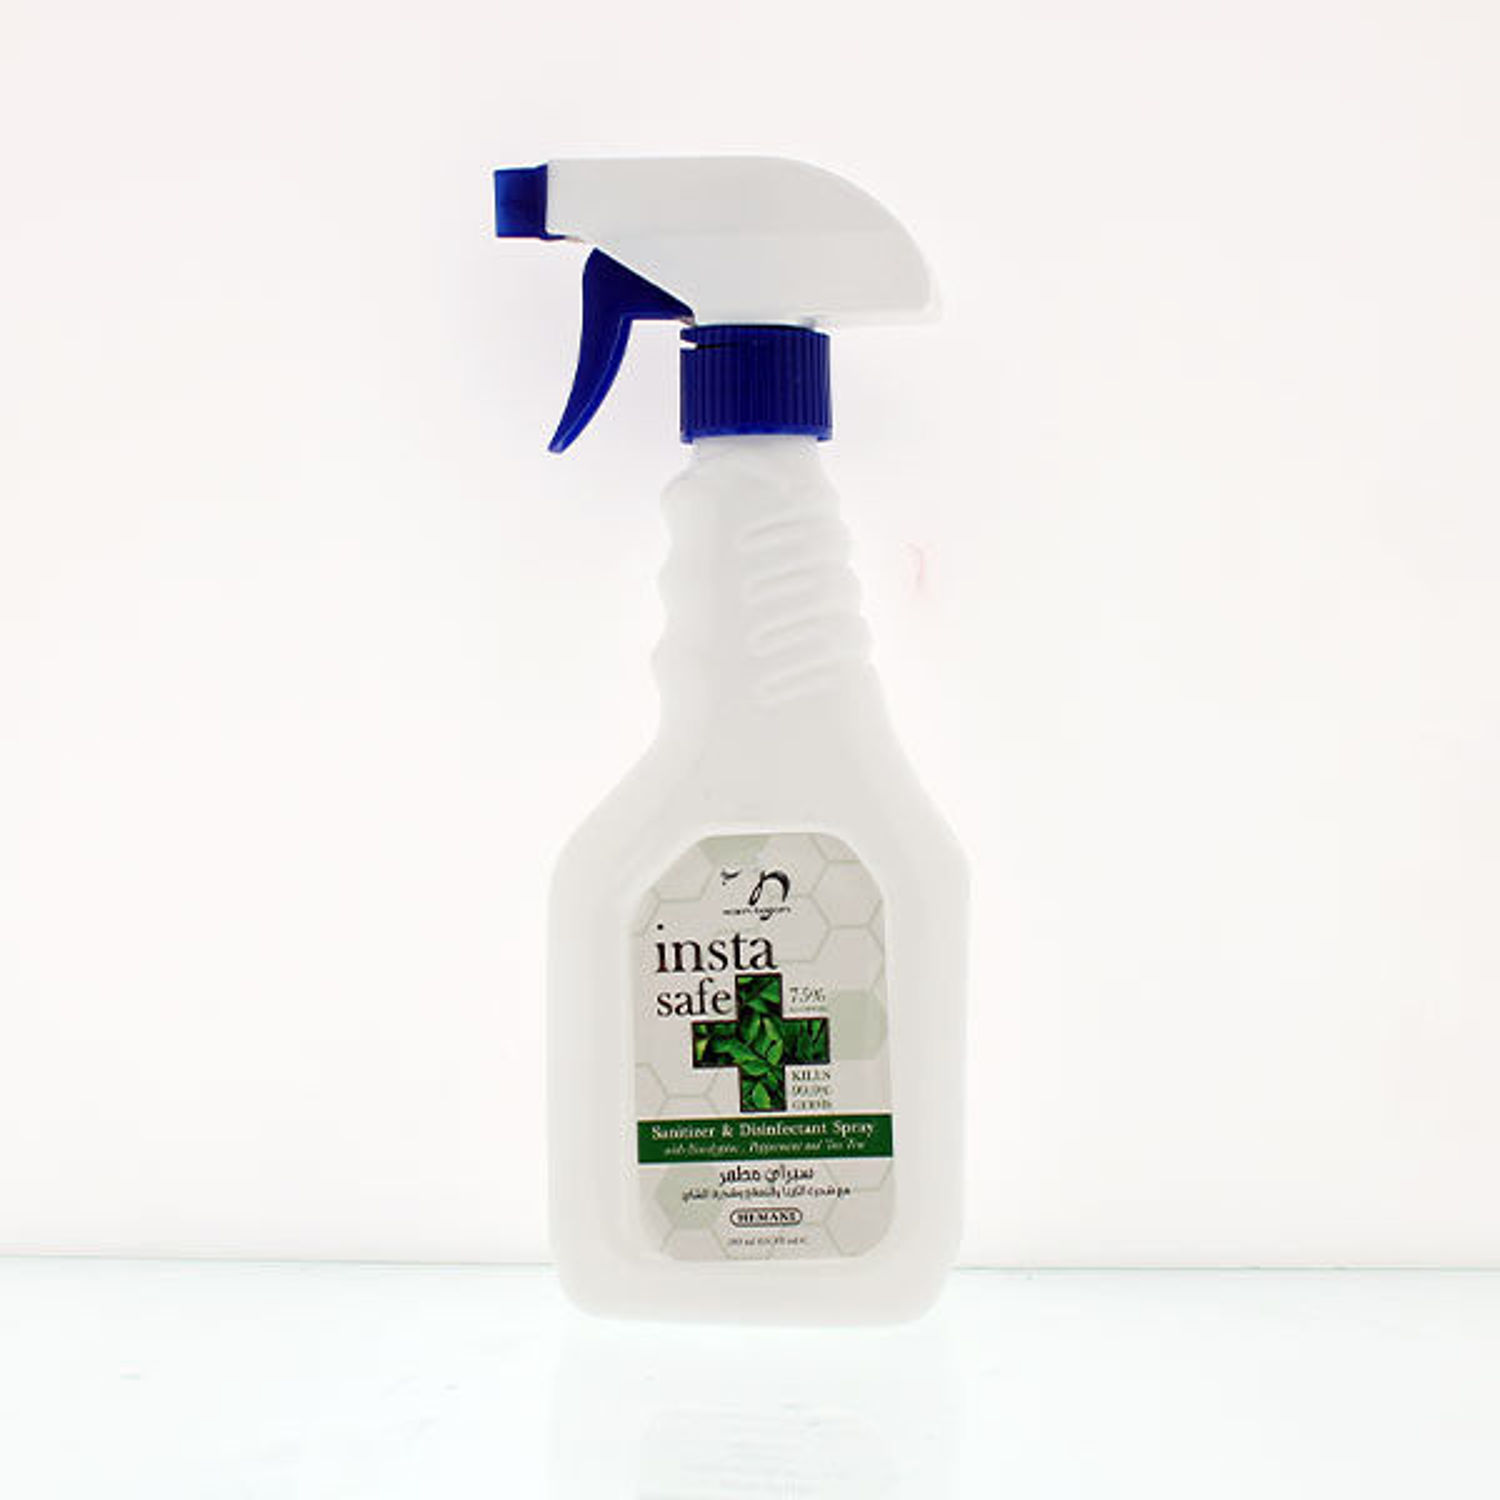 INSTA SAFE Multipurpose Disinfectant Spray